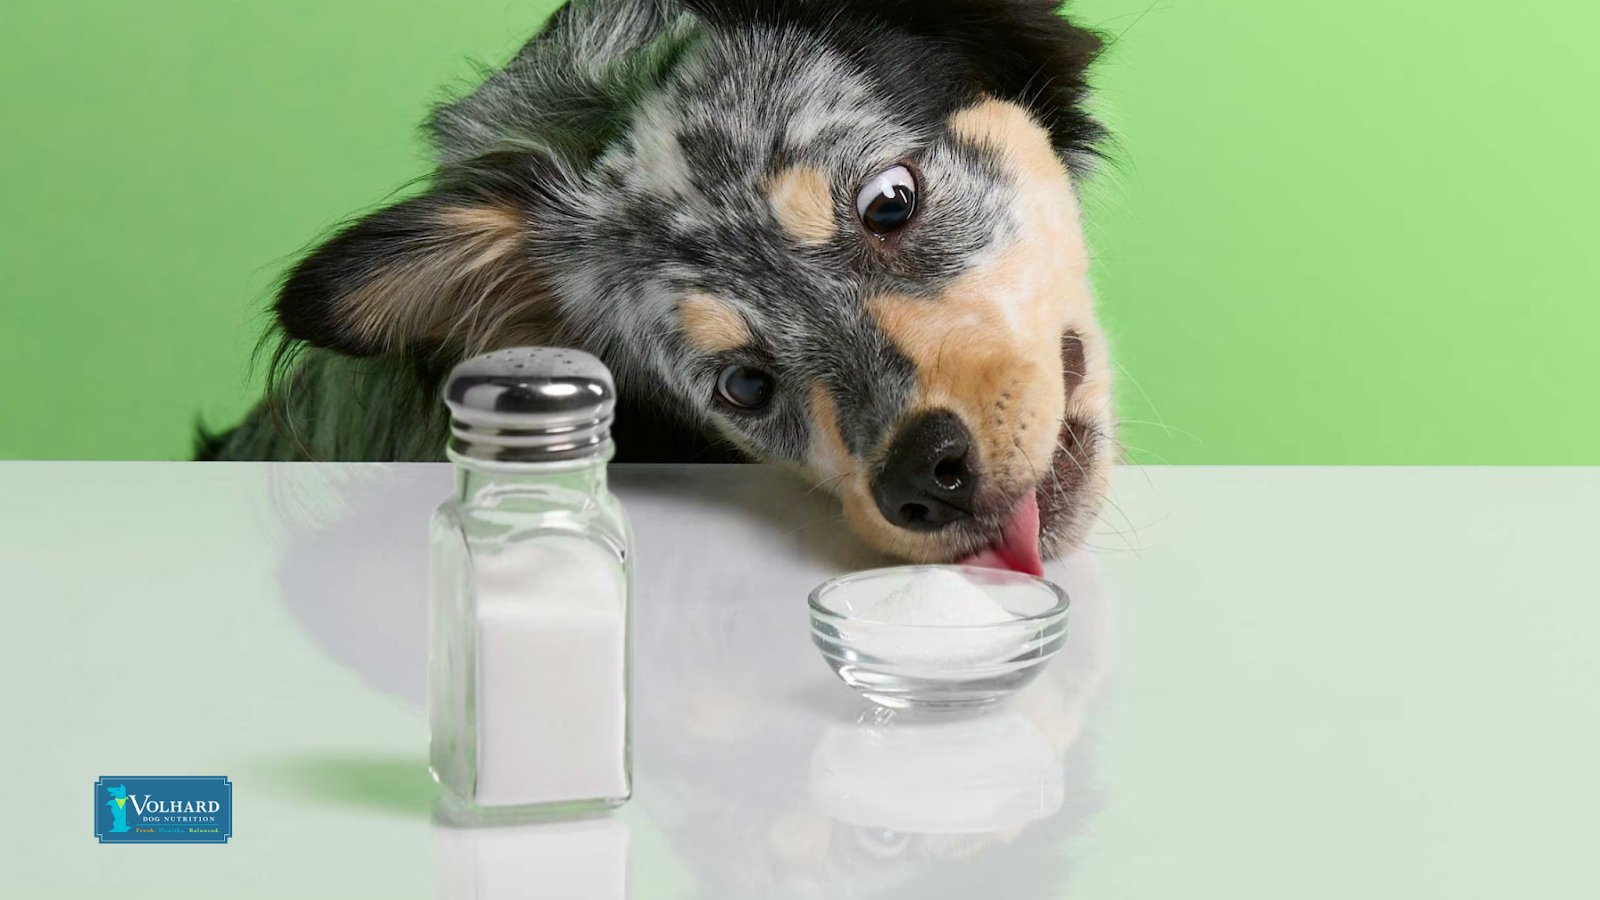 Dog and salt